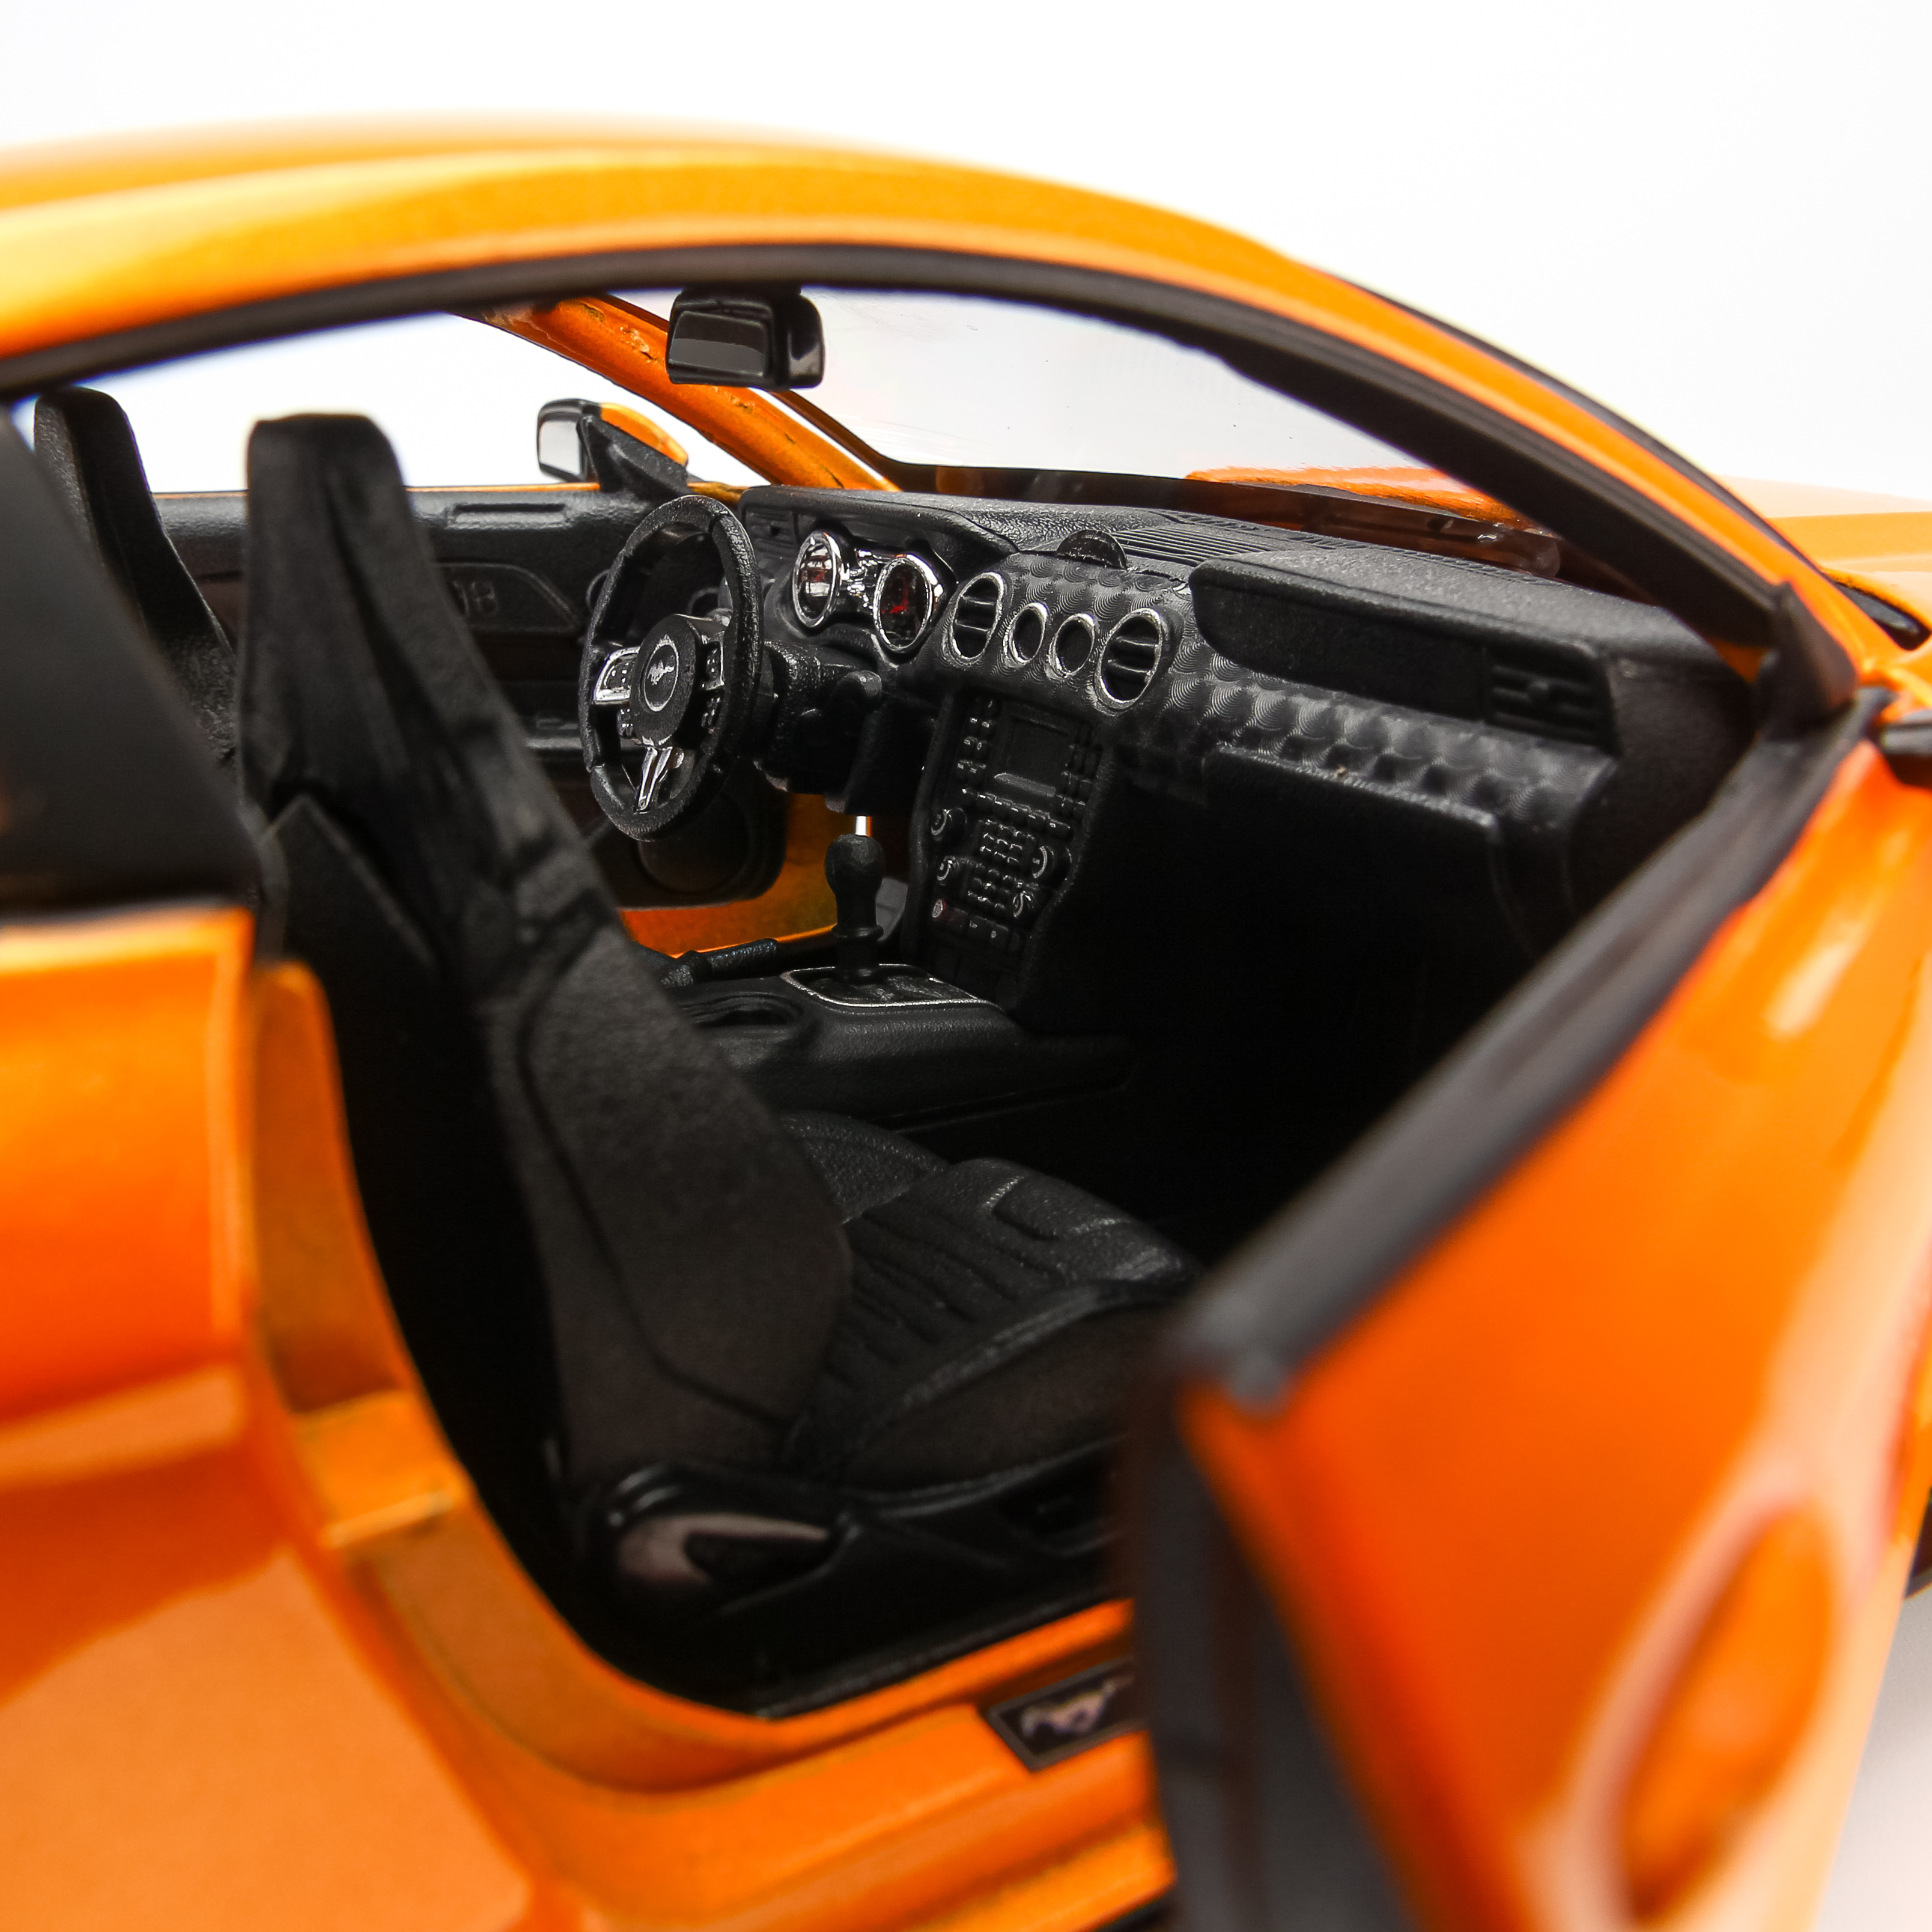 Mô Hình Xe Ford Mustang Orange GT 2015 1:18 Maisto MH-31197